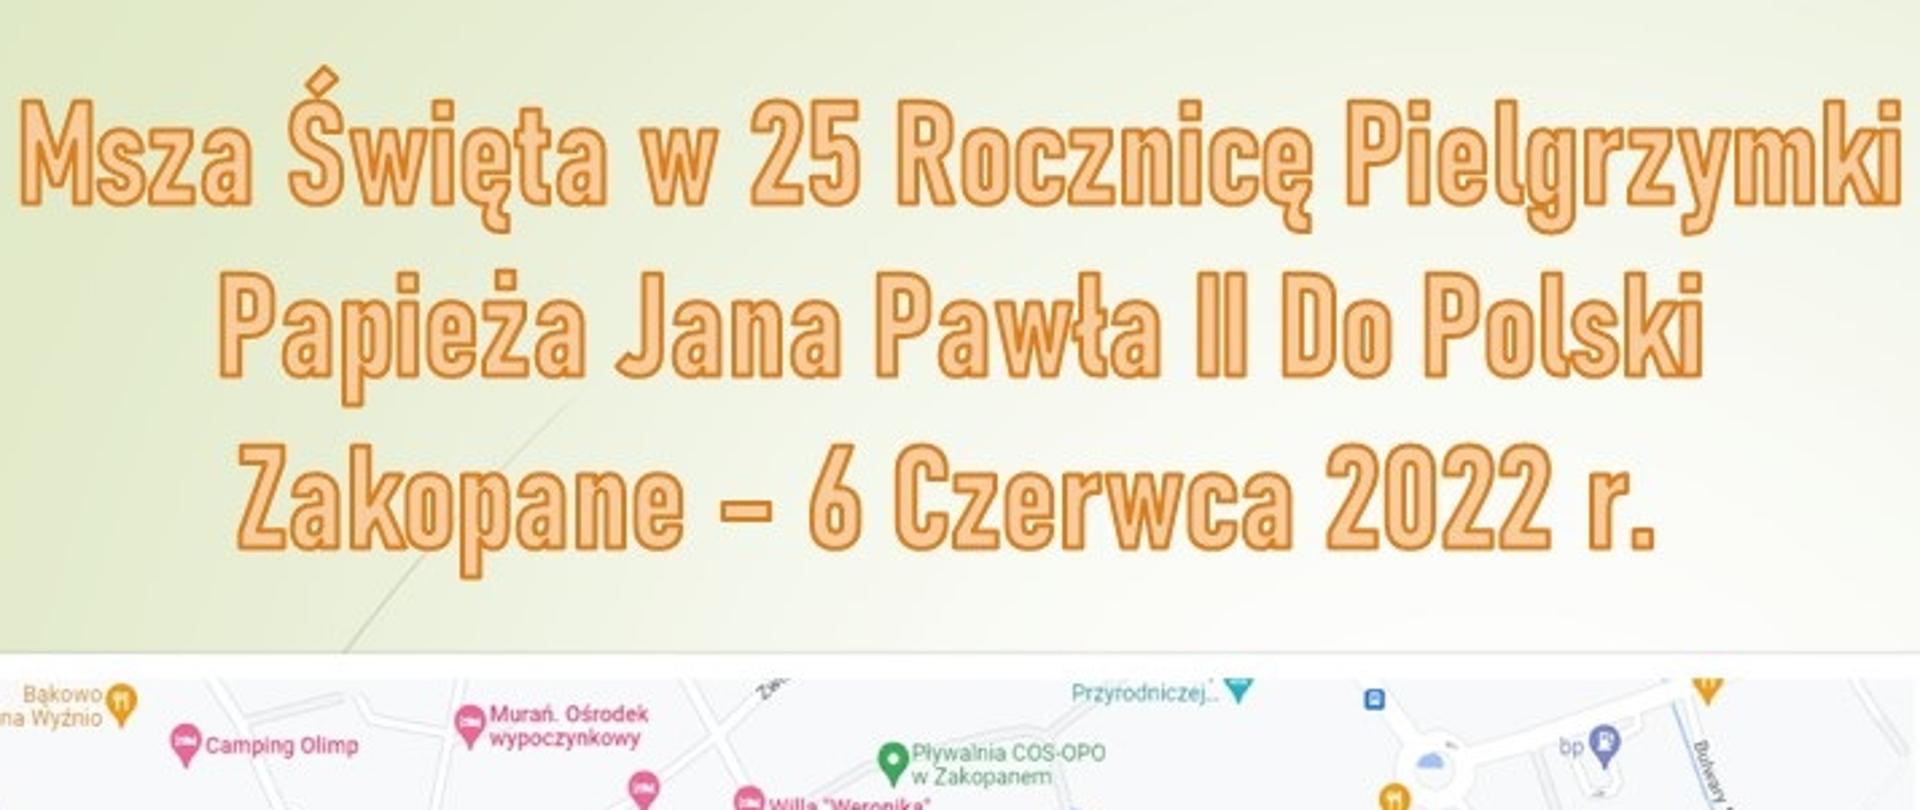 Msza Św. w 25 rocznicę pielgrzymi Papieża Jana Pawła II do Polski